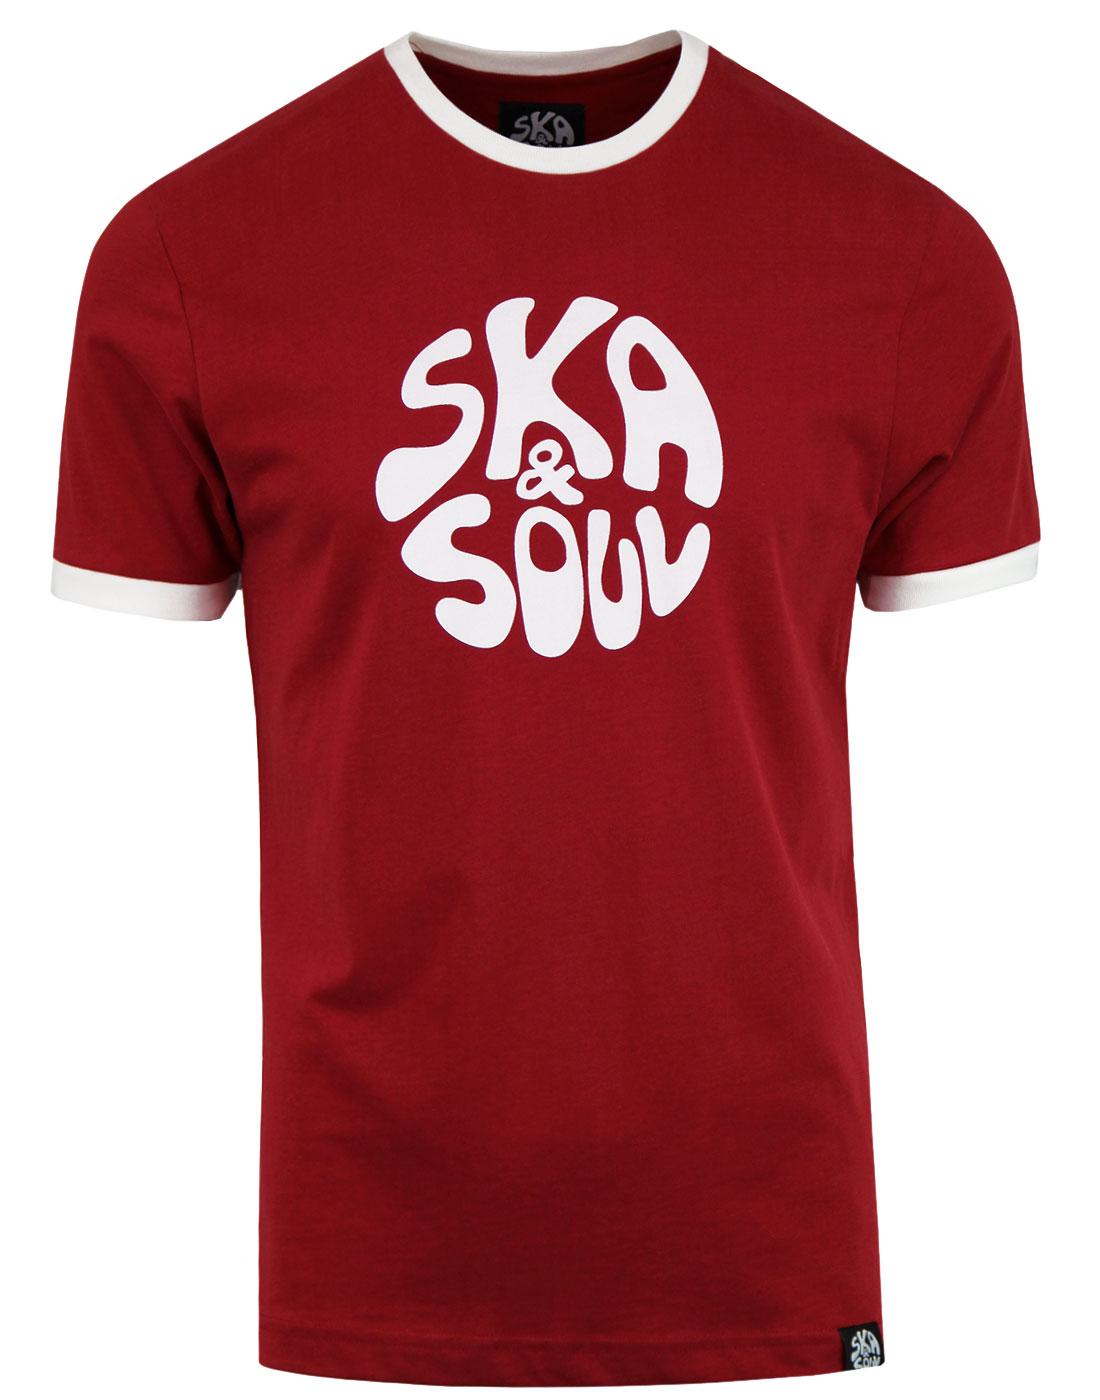 SKA & SOUL Men's Retro Mod Ringer Logo T-shirt RED